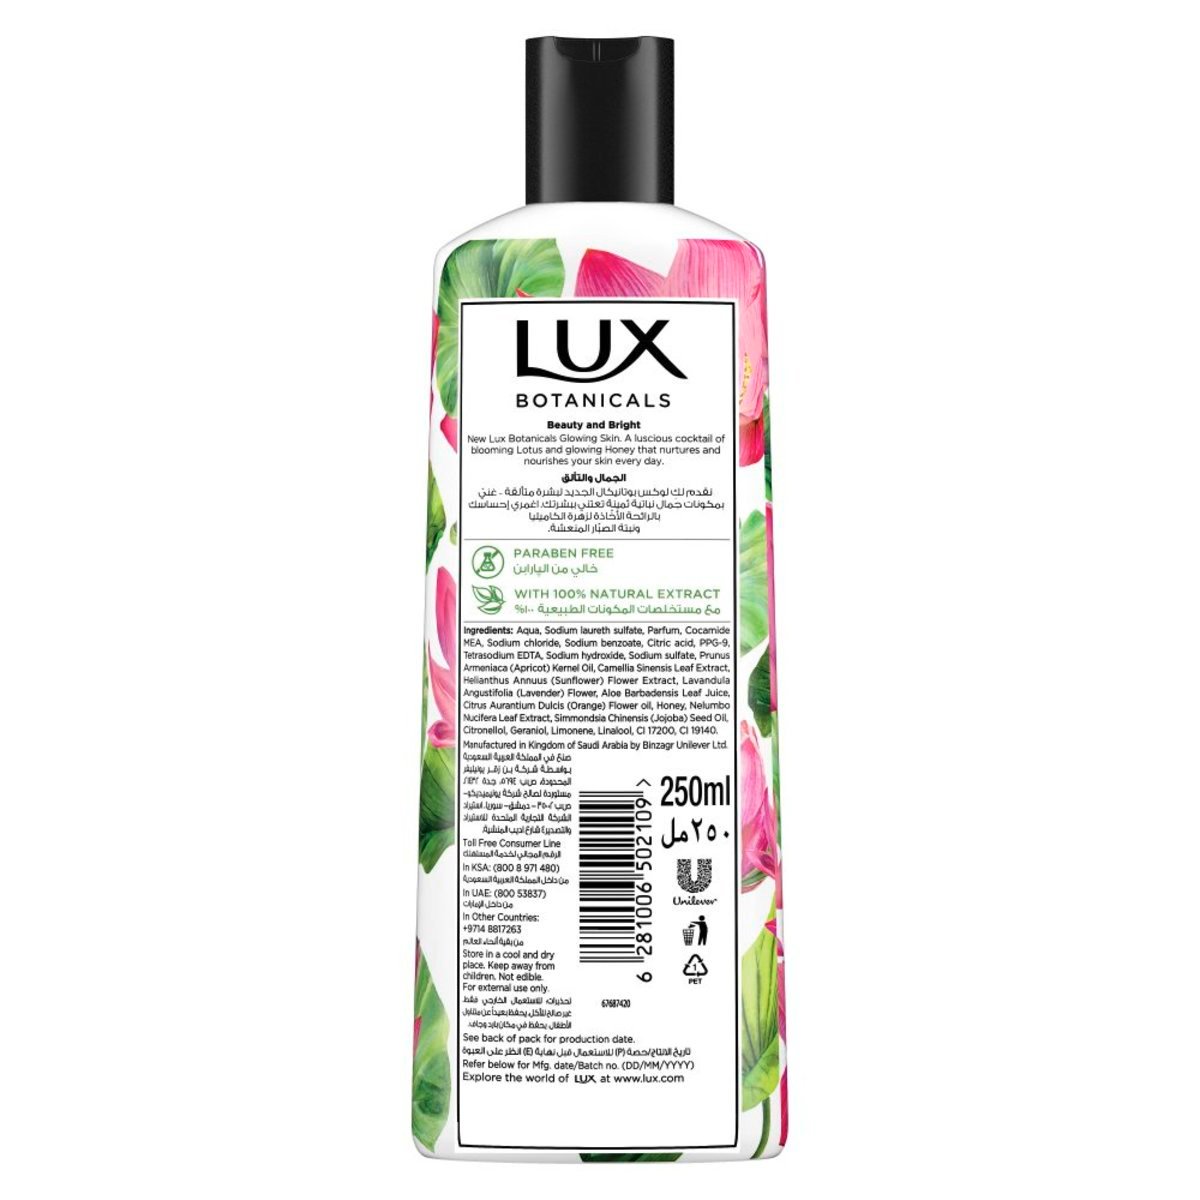 Lux Botanicals Glowing Skin Body Wash Lotus & Honey 250 ml